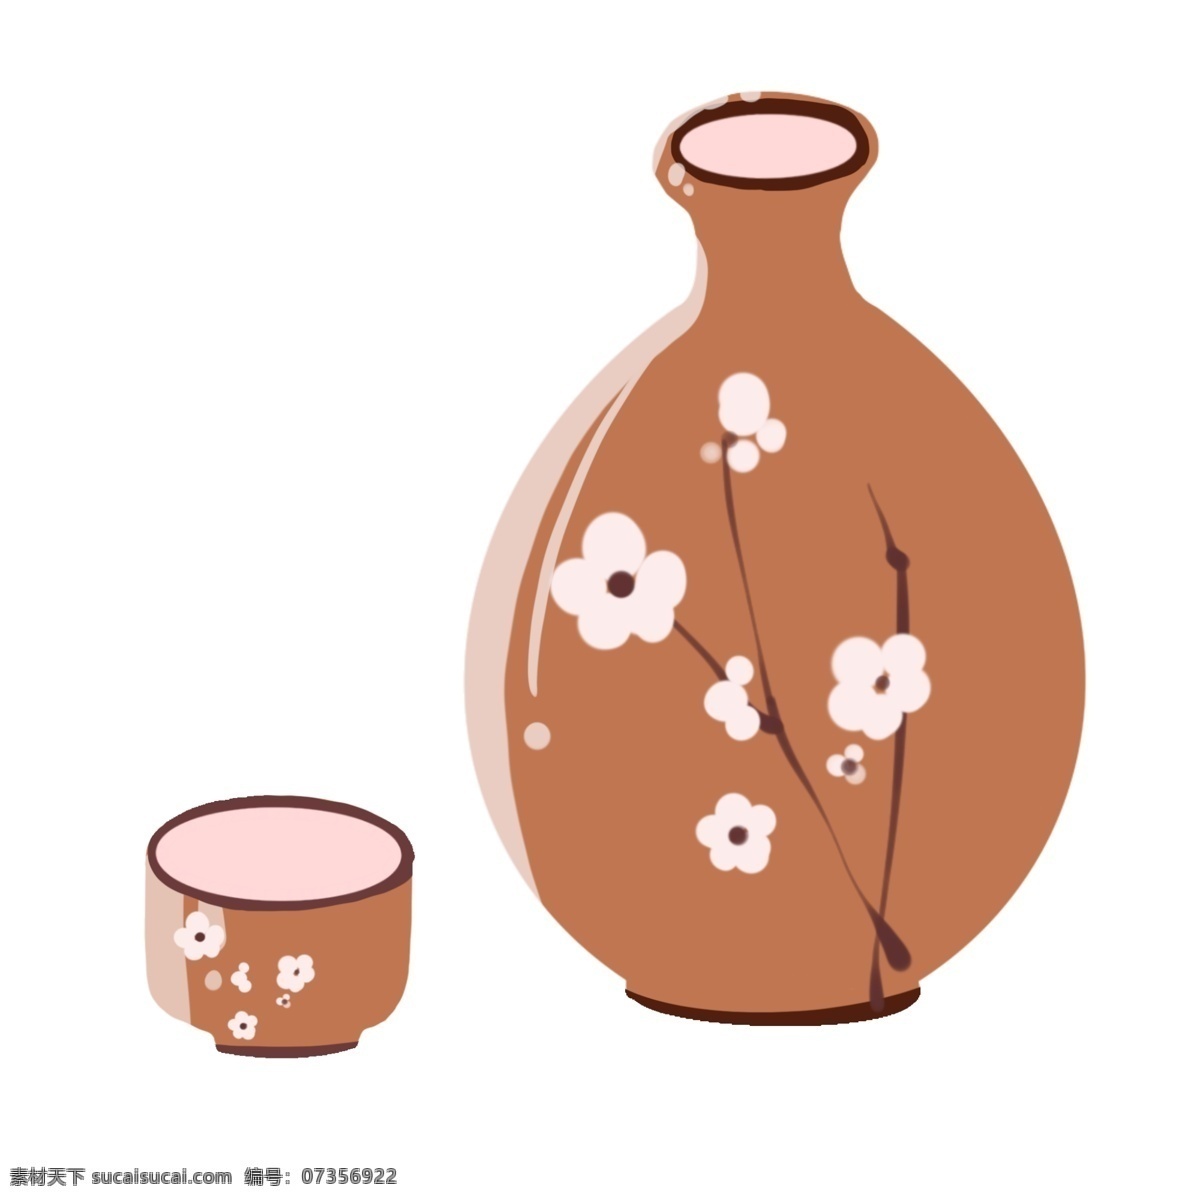 棕色 日本 清酒 瓶子 插画 棕色的瓶子 日本清酒 樱花花纹 卡通插画 日本酒水 日本特色 日本文化 酒杯